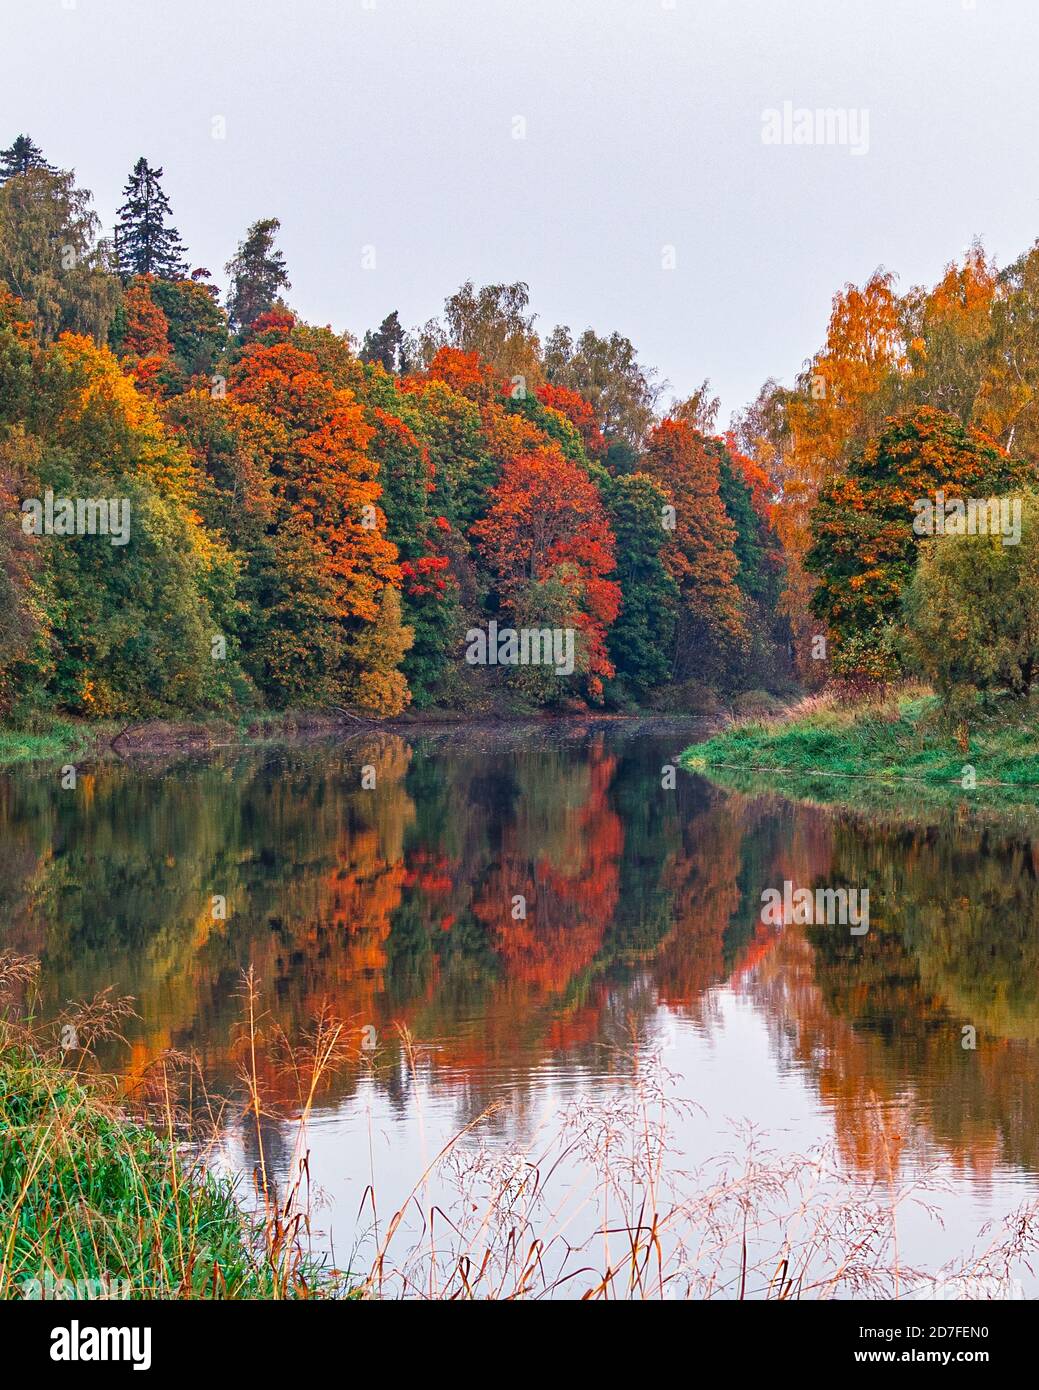 Paysage d'automne d'arbres colorés se reflète dans la surface en miroir de la rivière calme par une journée nuageux. Côte avec forêt d'orangers. Paysage d'octobre. Banque D'Images